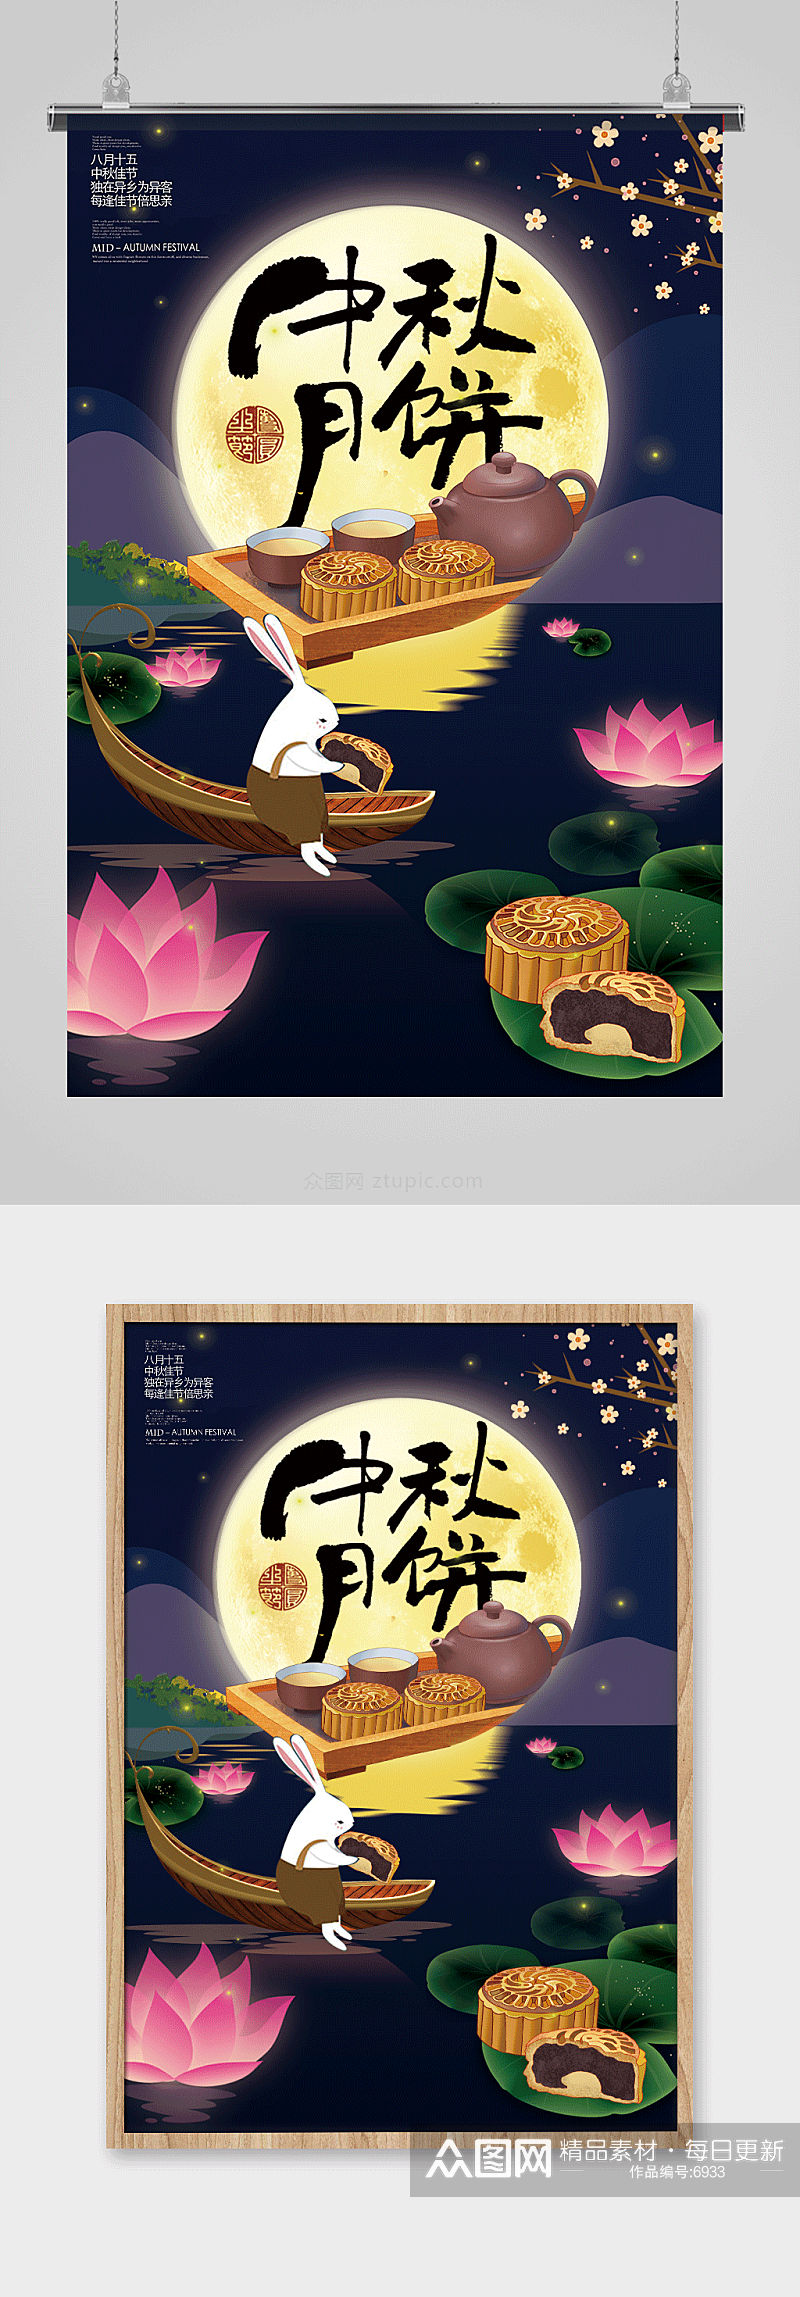 大气唯美中秋节传统节日海报设计素材